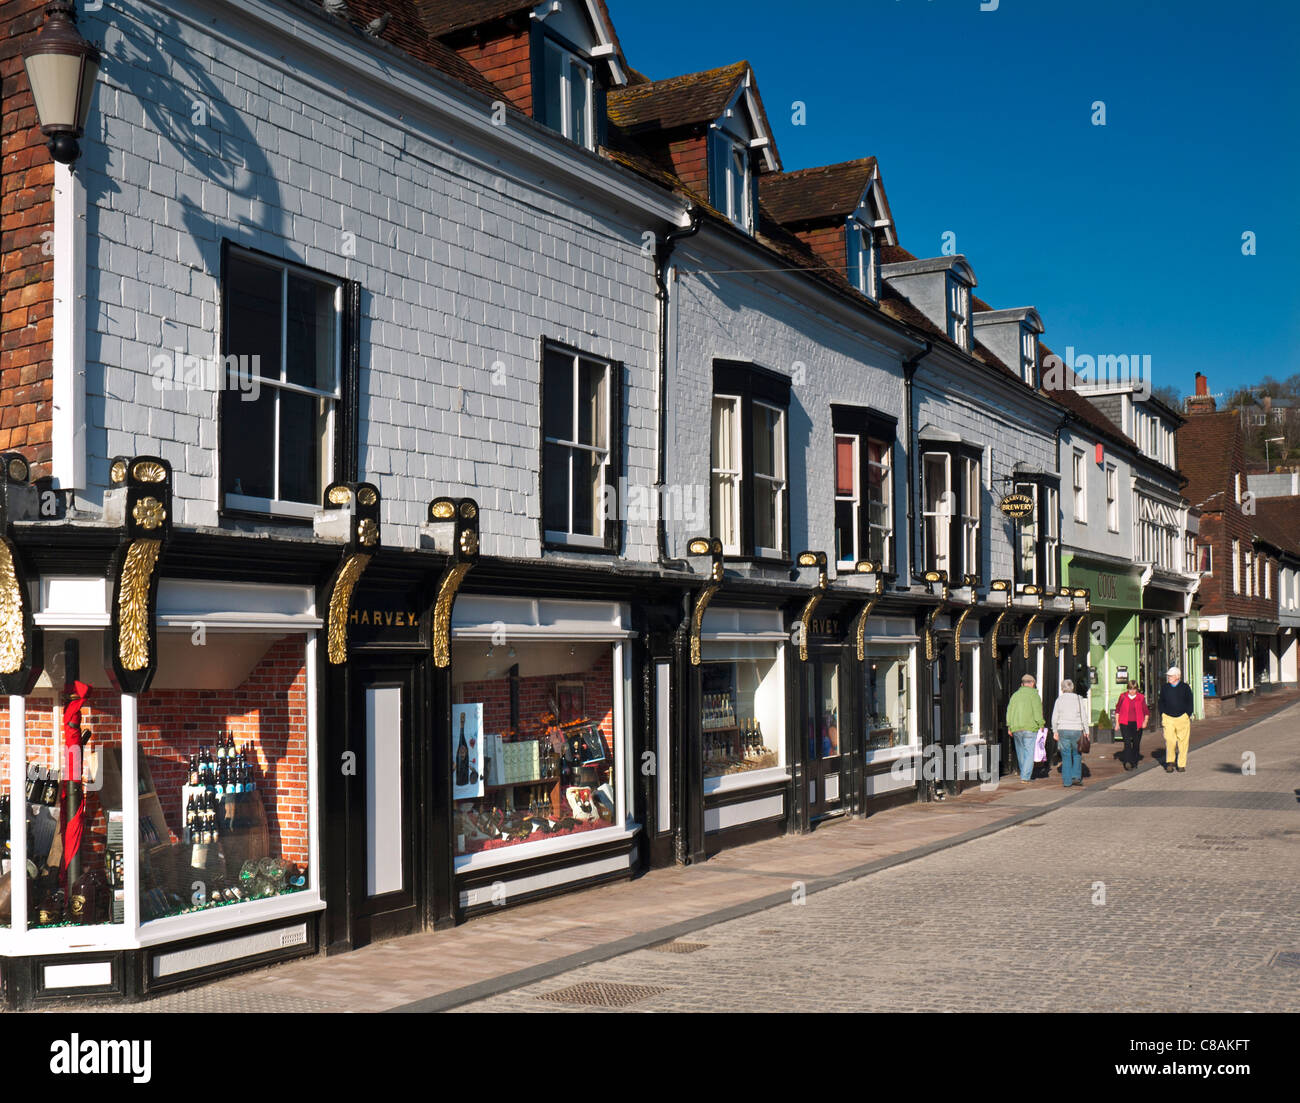 Harveys brasserie historique shop et des magasins et shoppers Lewes East Sussex UK Banque D'Images